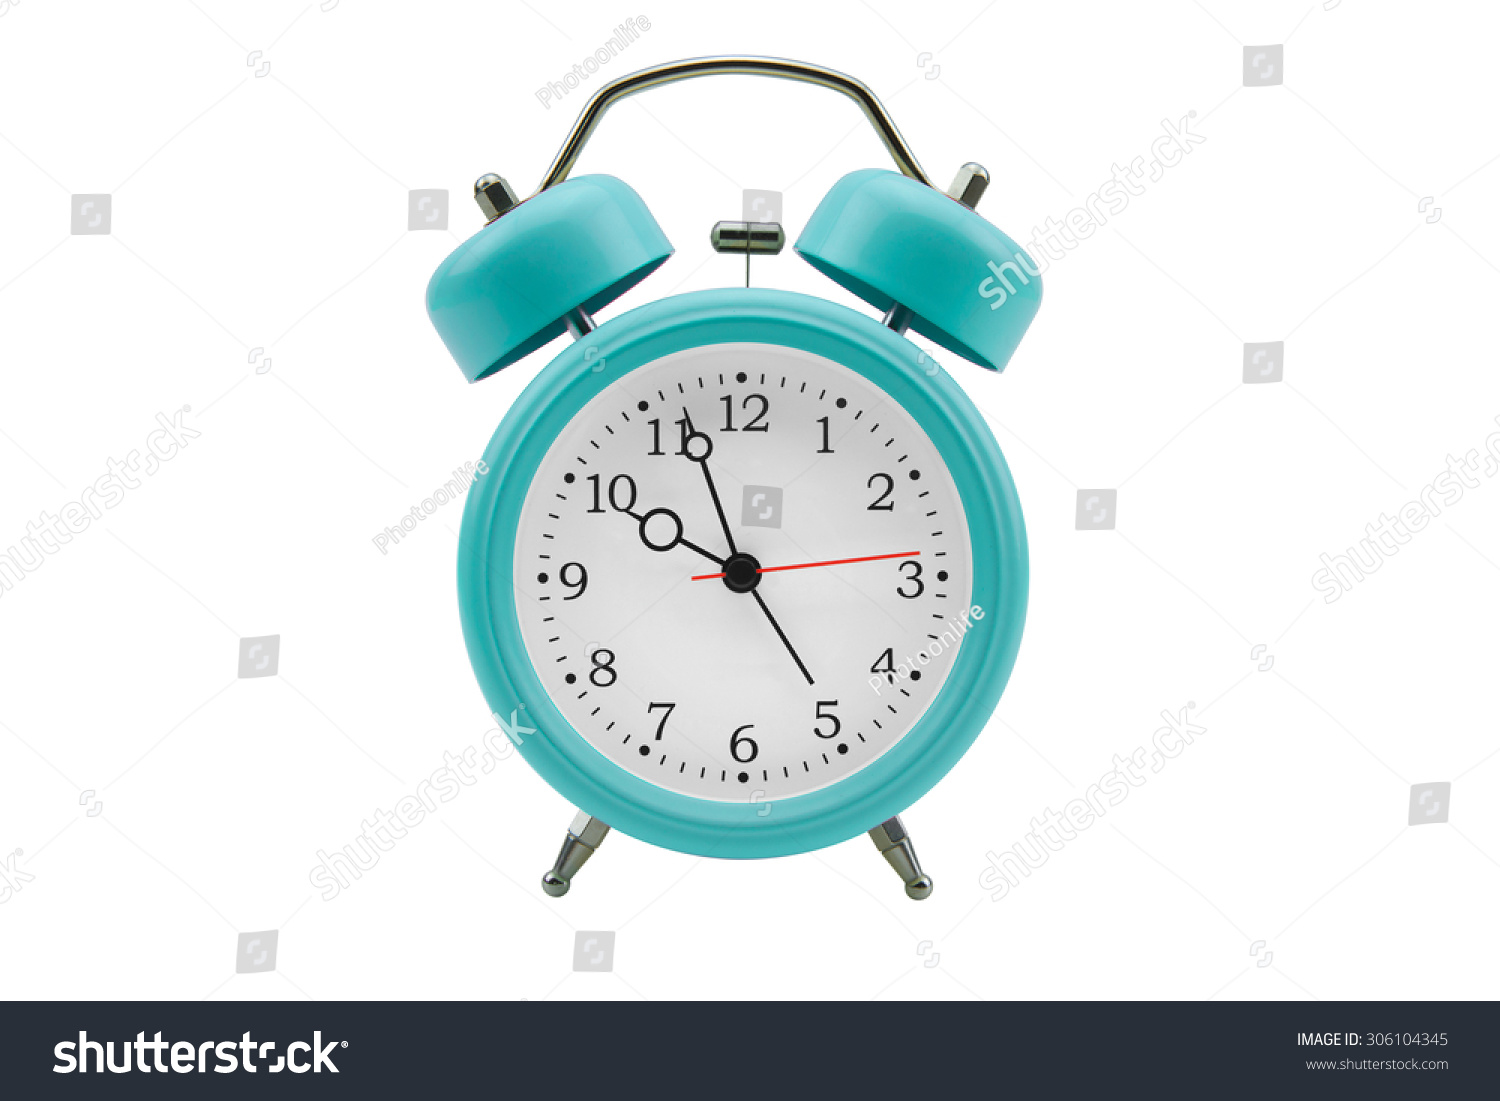 Alarm clock isolated on white background #306104345